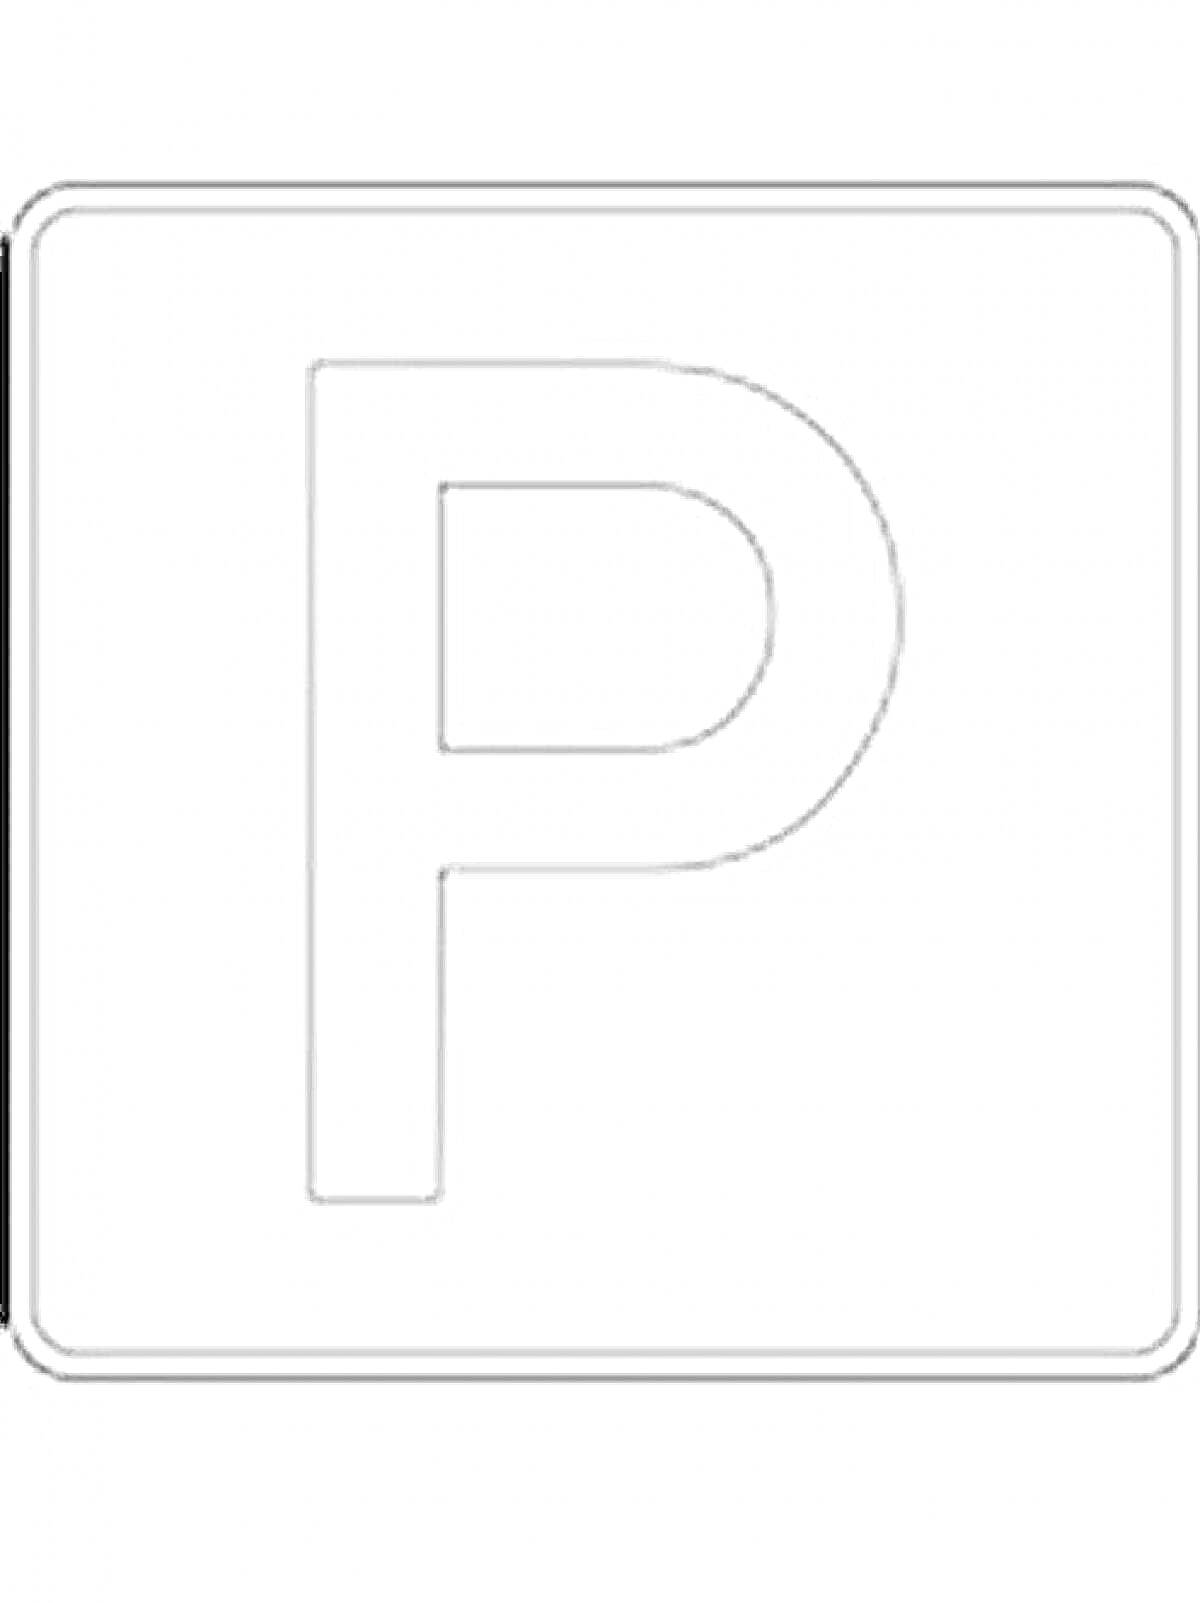 Раскраска Знак парковка - буква P в квадратной рамке